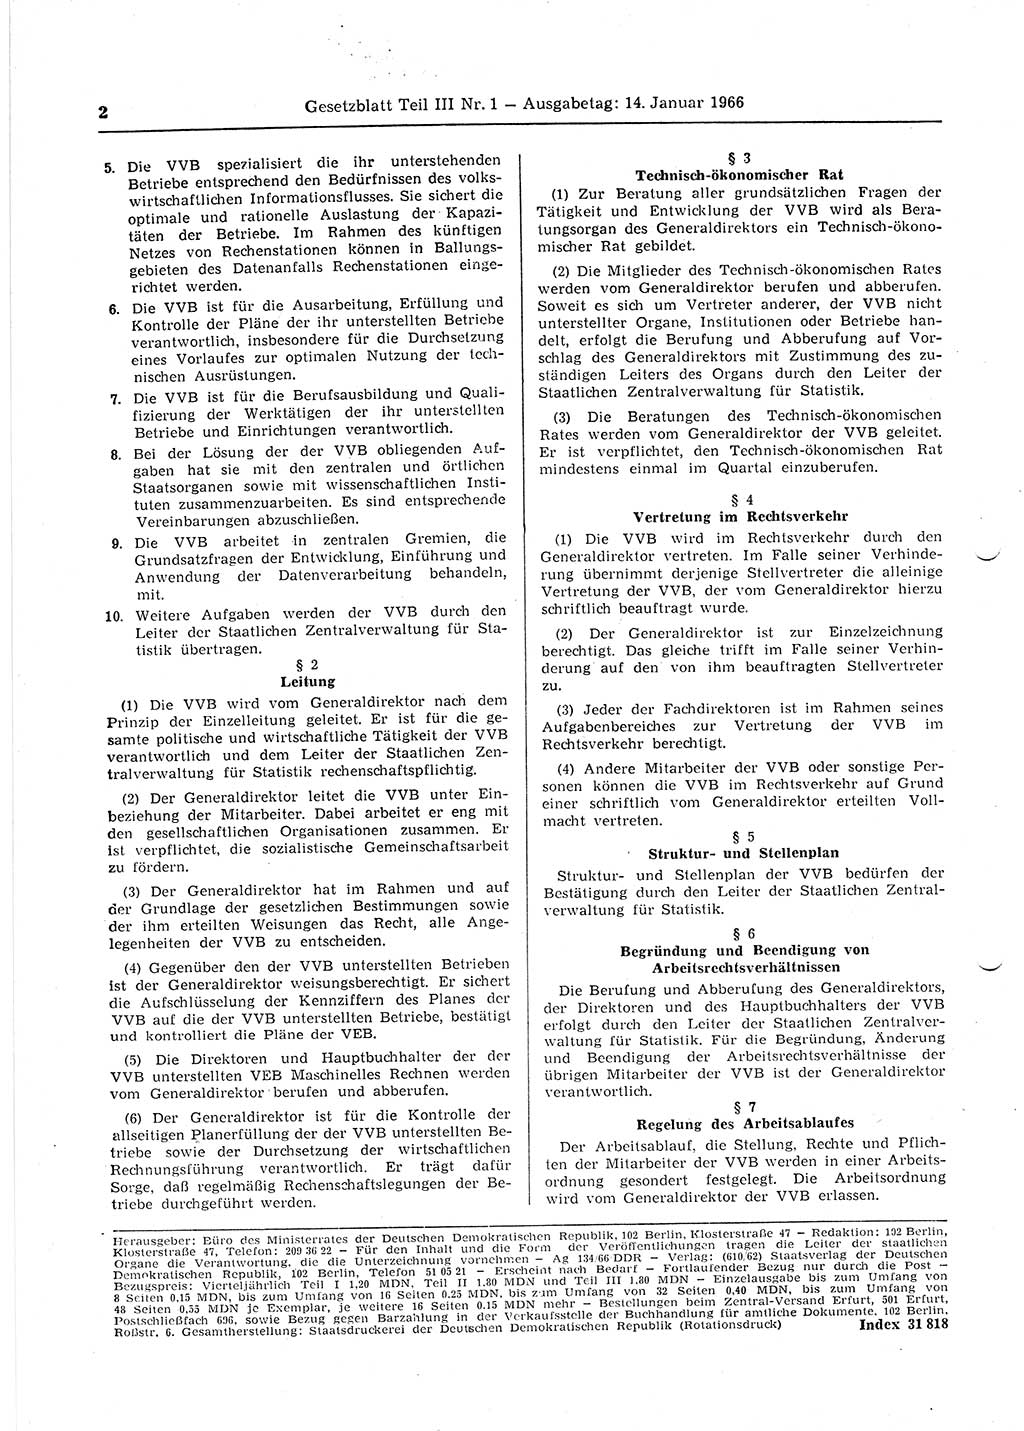 Gesetzblatt (GBl.) der Deutschen Demokratischen Republik (DDR) Teil ⅠⅠⅠ 1966, Seite 2 (GBl. DDR ⅠⅠⅠ 1966, S. 2)